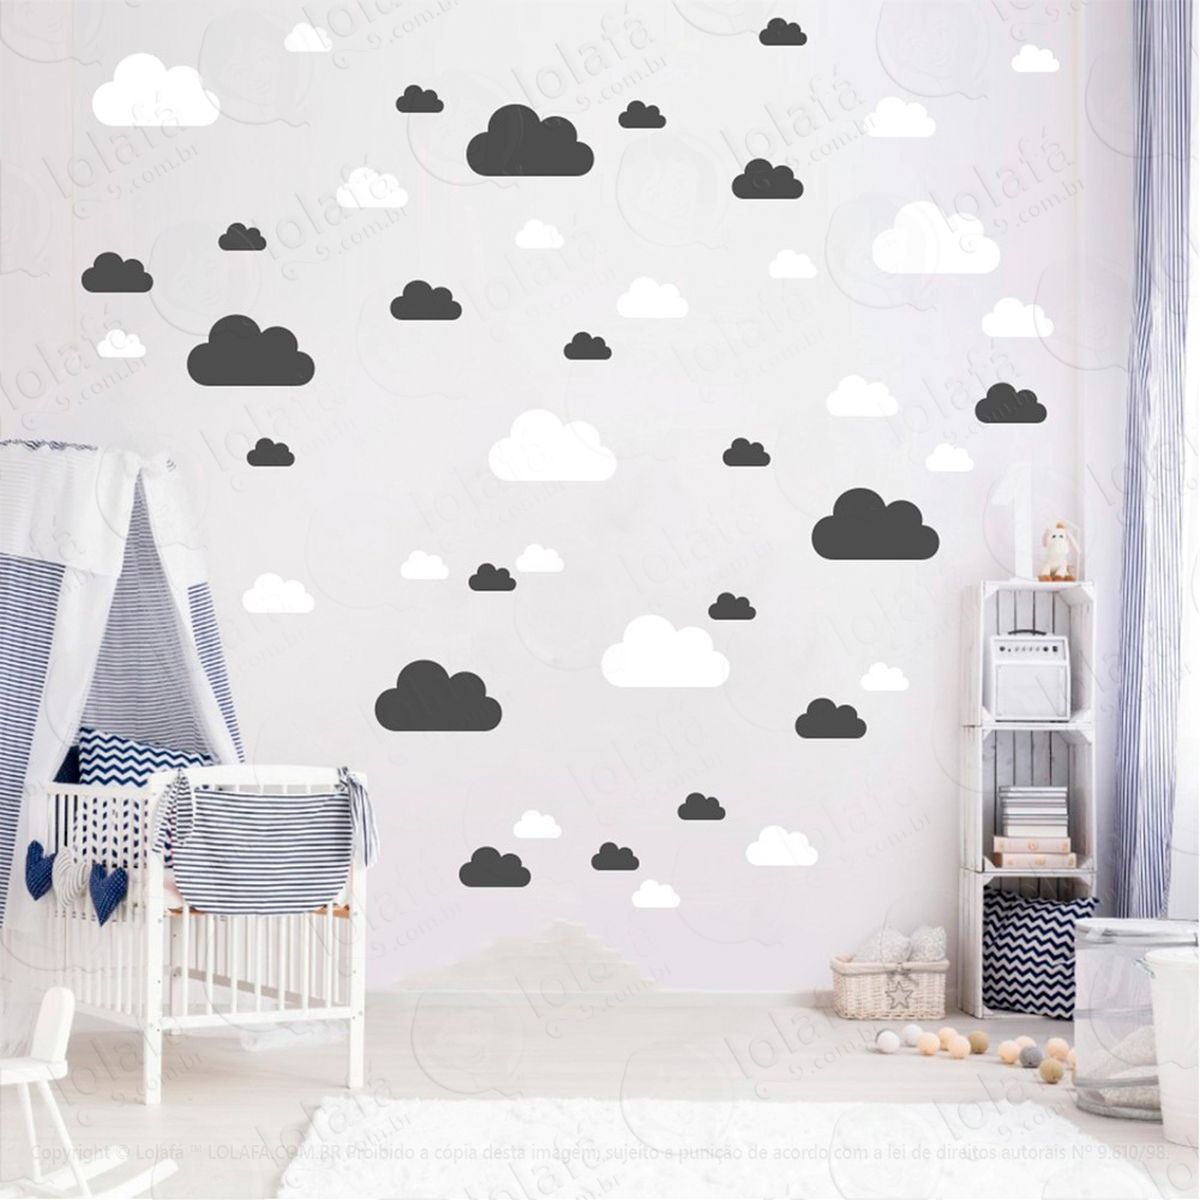 adesivos nuvens 78 peças adesivos para quarto de bebê infantil - mod:760